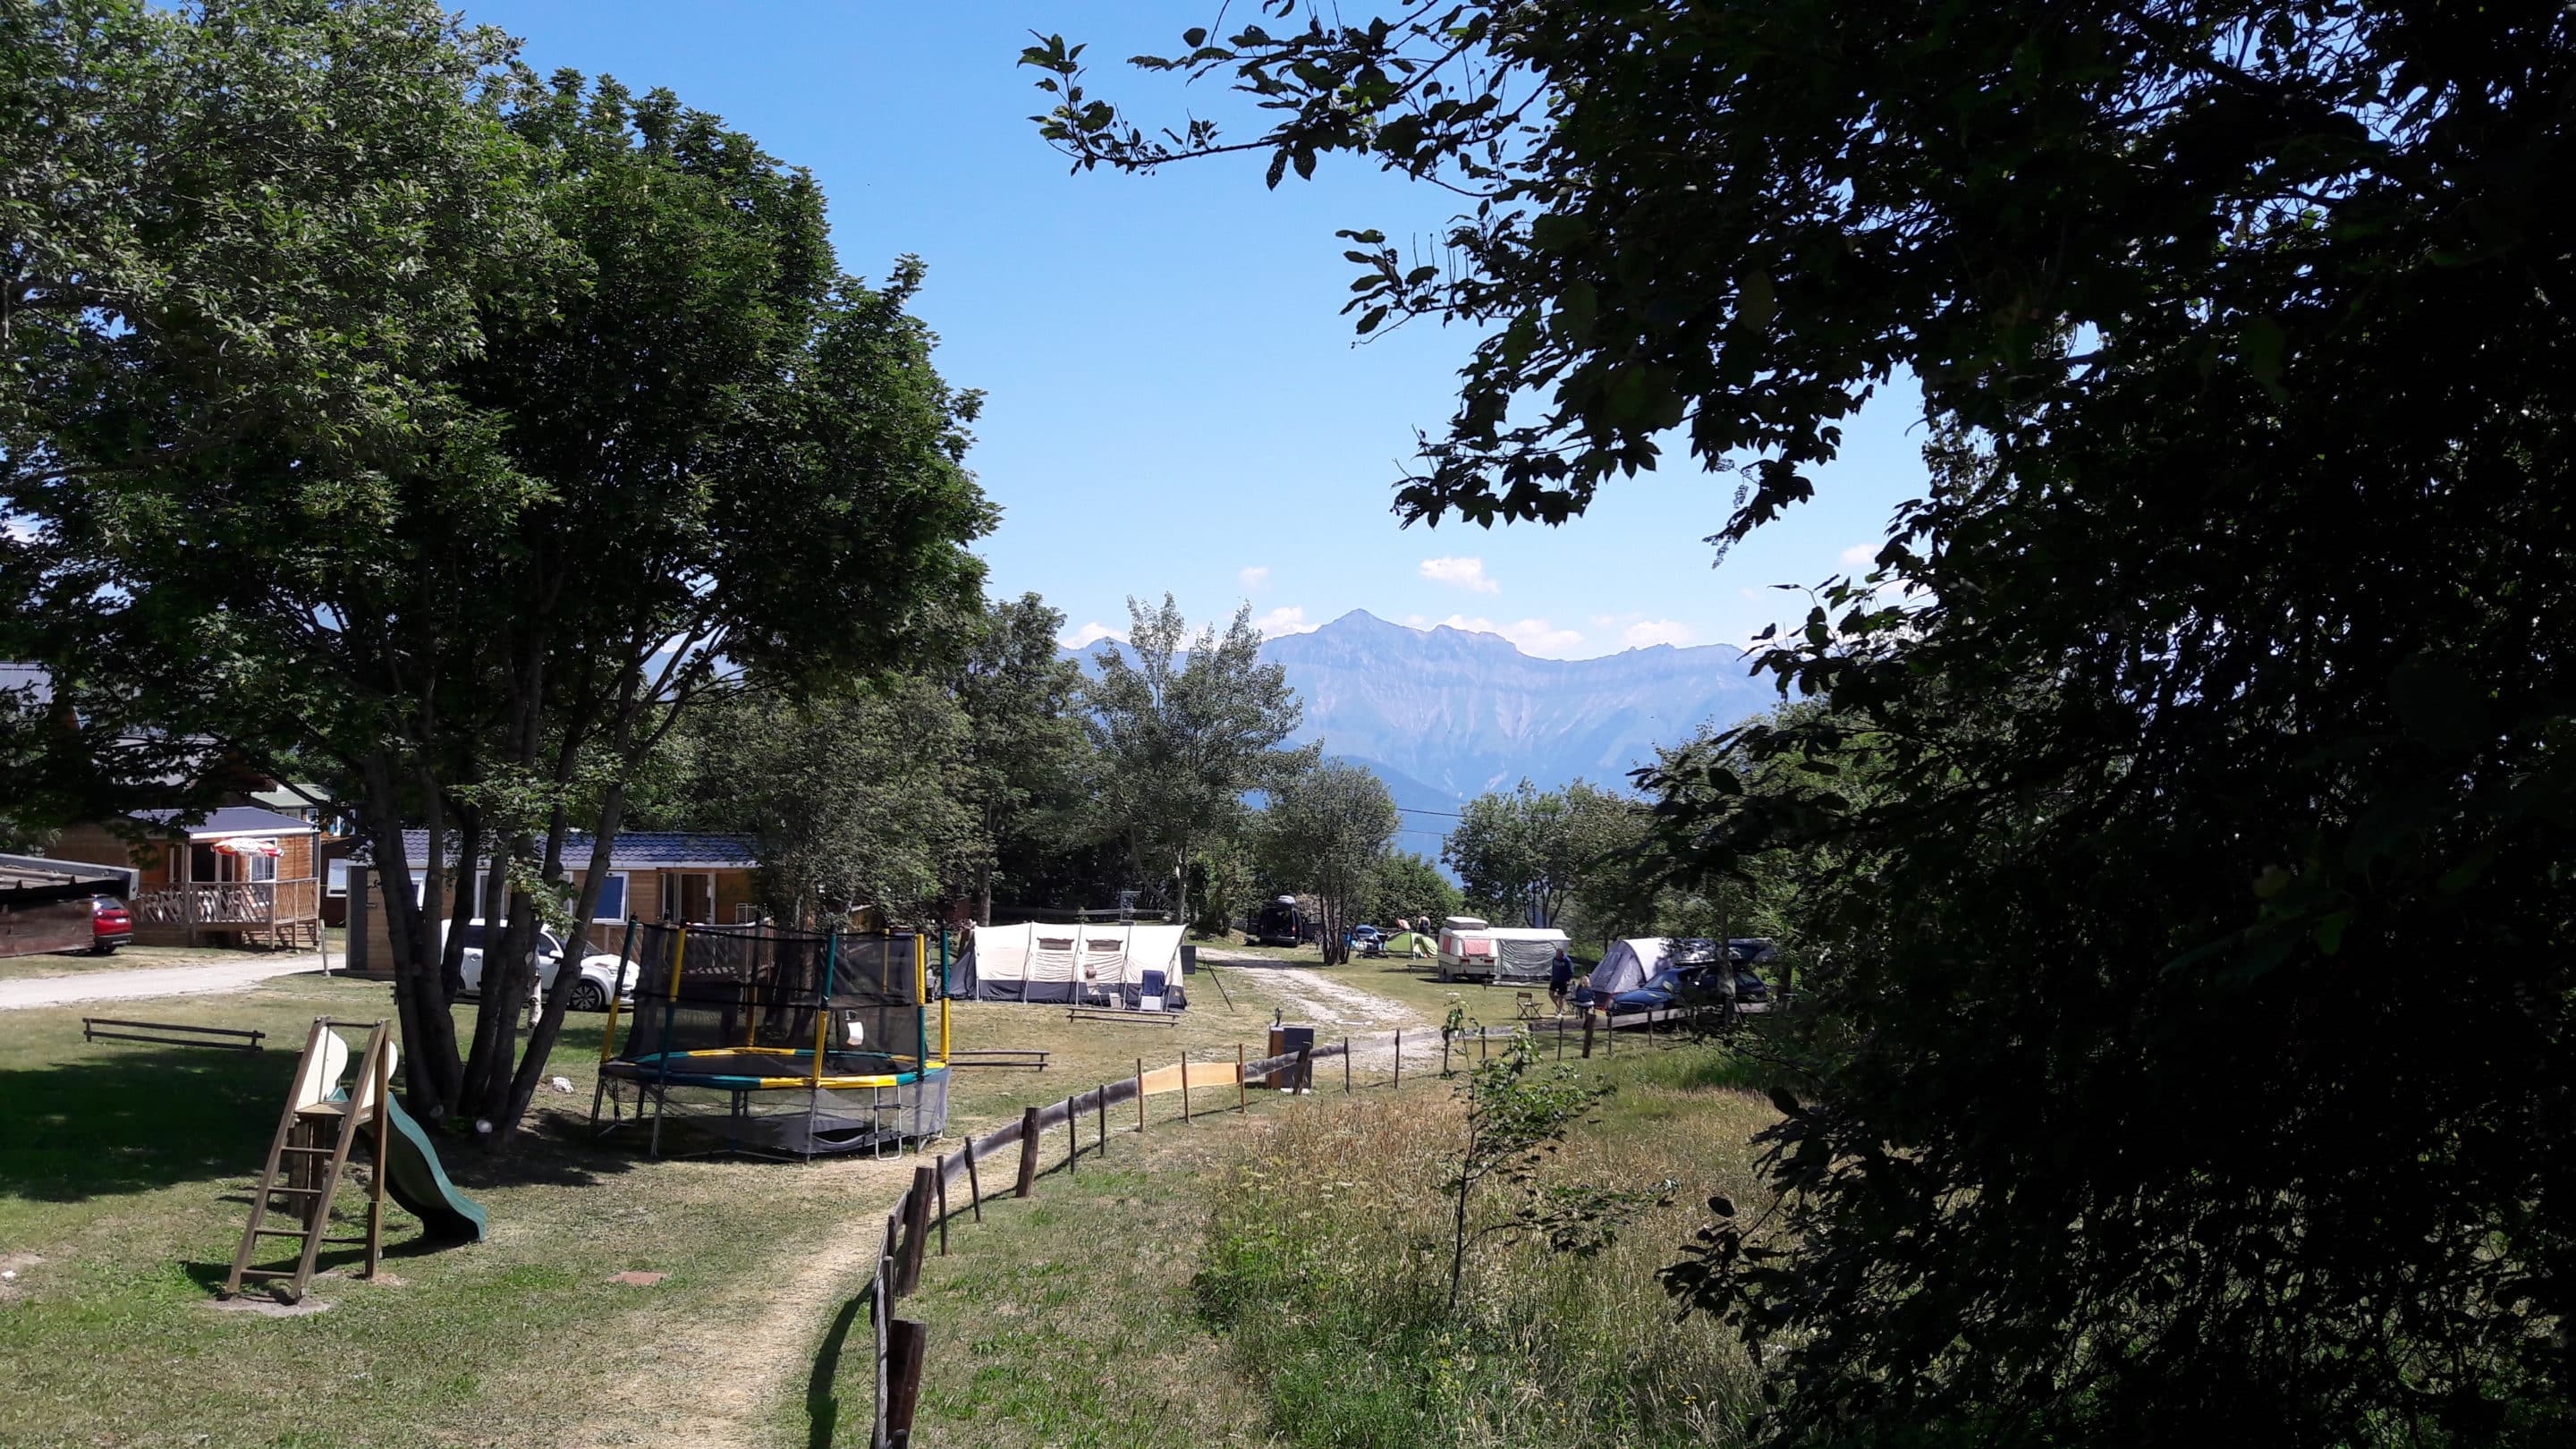 Vente à emporter de vin de savoie sur le camping caravaneige du Col la Toussuire les Sybelles Maurienne Savoie